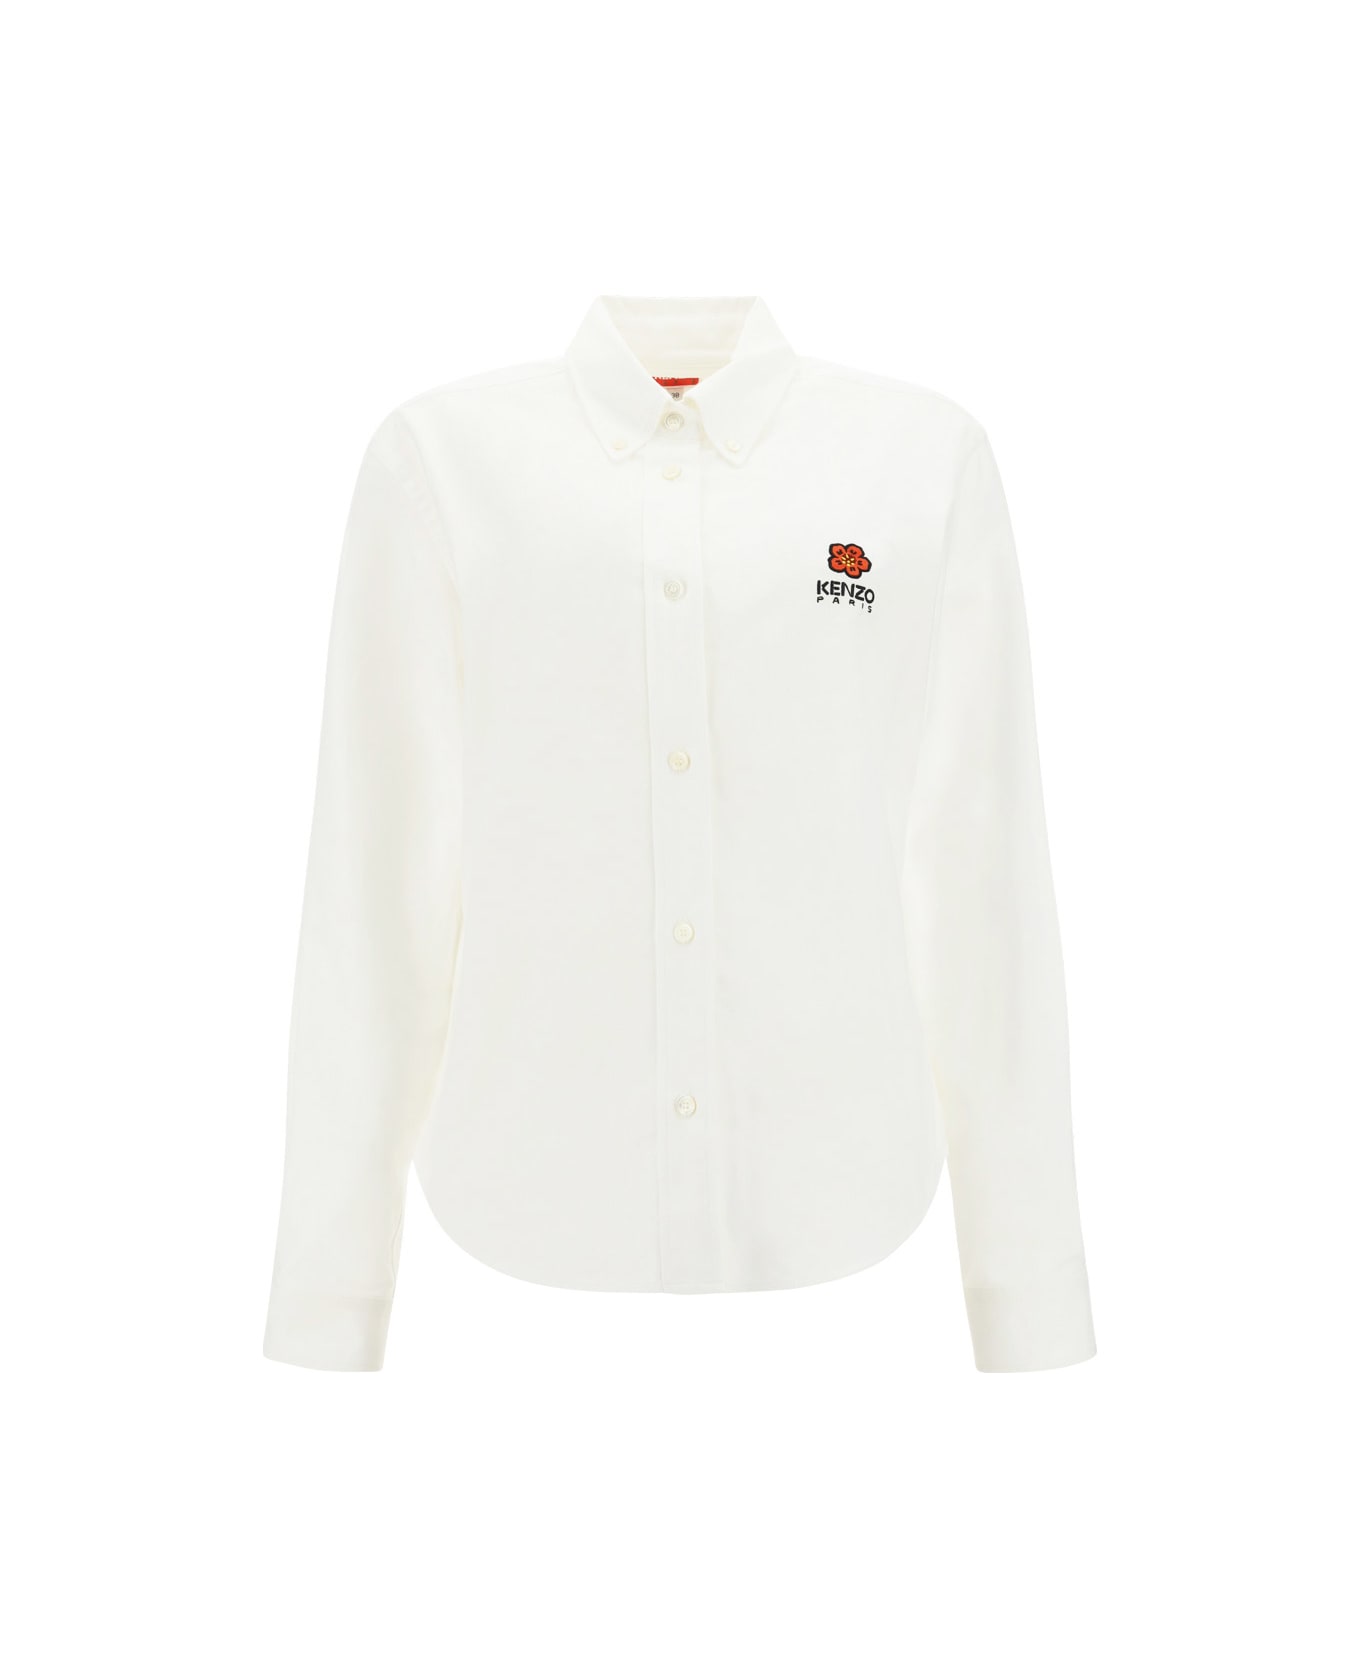 Kenzo Ml Shirt - White